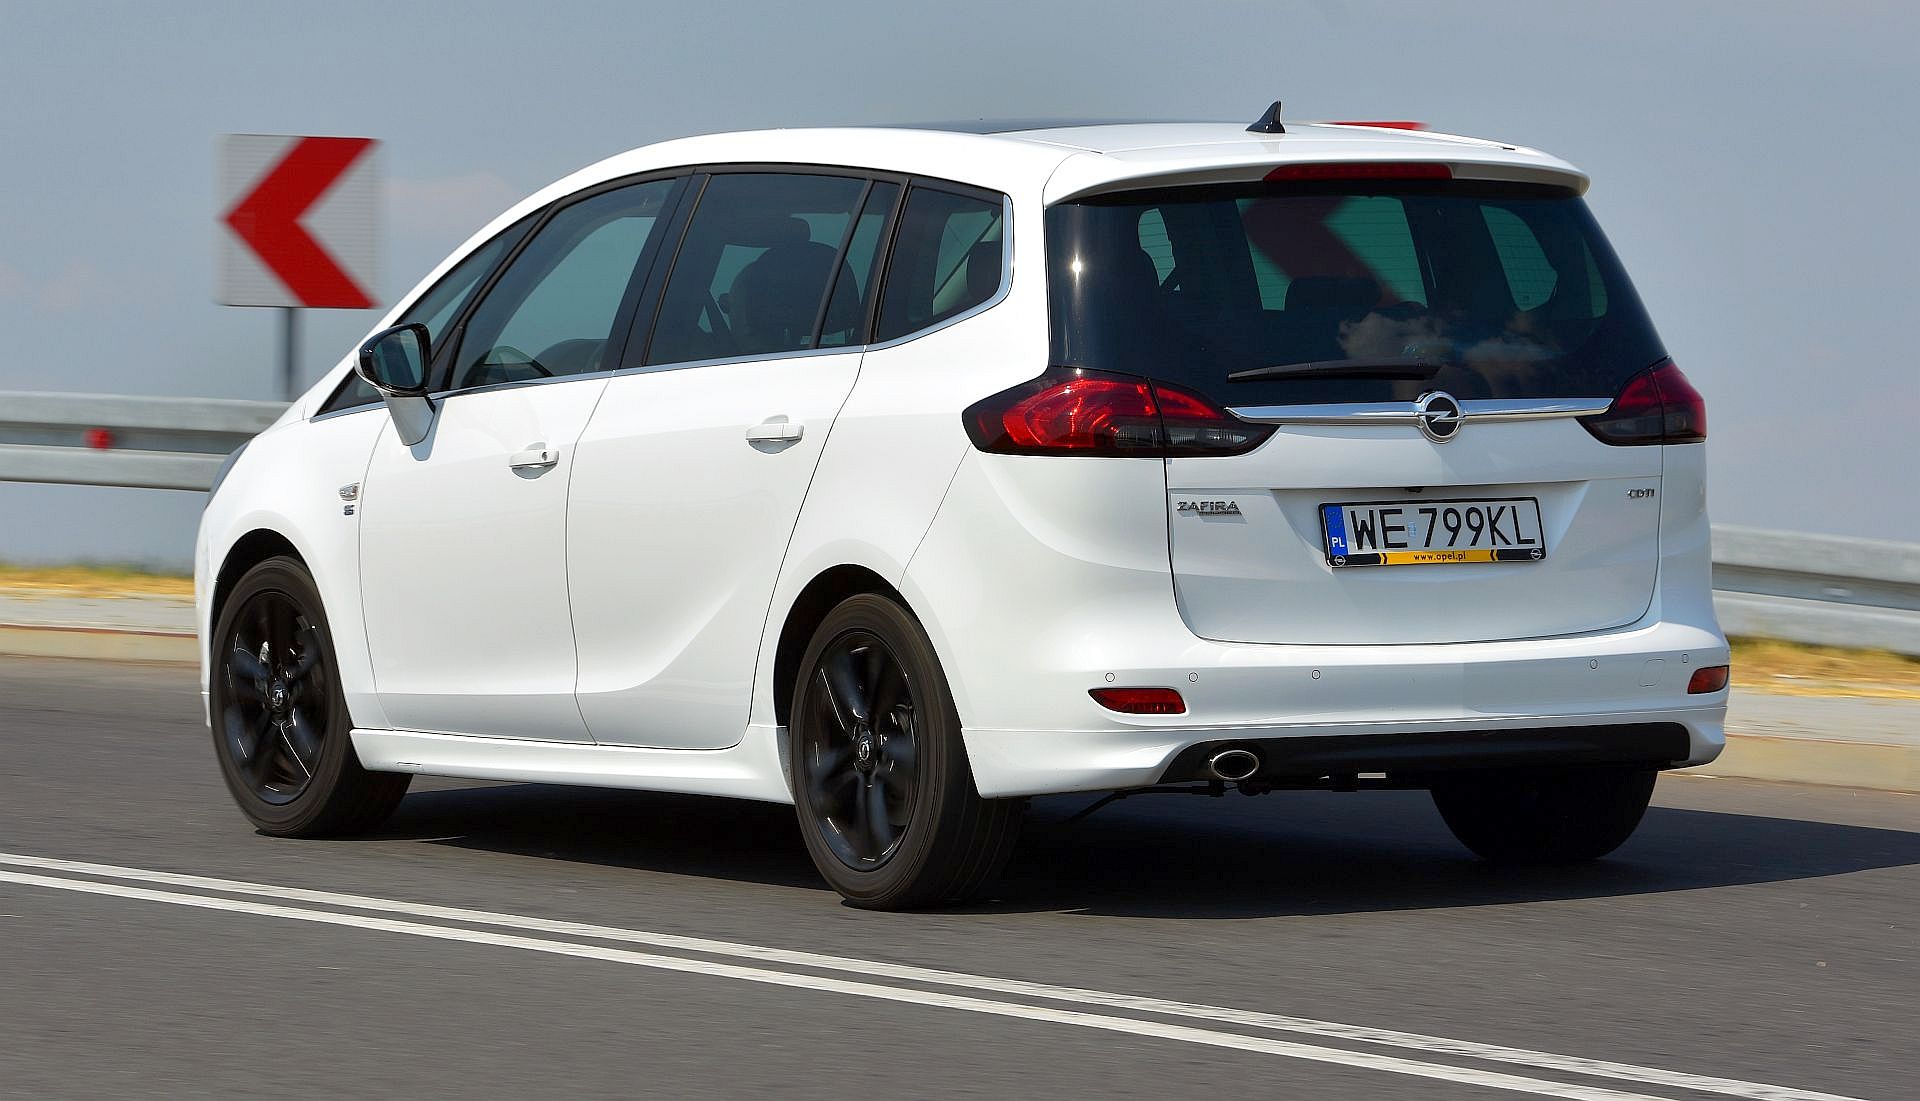 Używany Opel Zafira C (2011-2019) - opinie, dane techniczne, typowe usterki